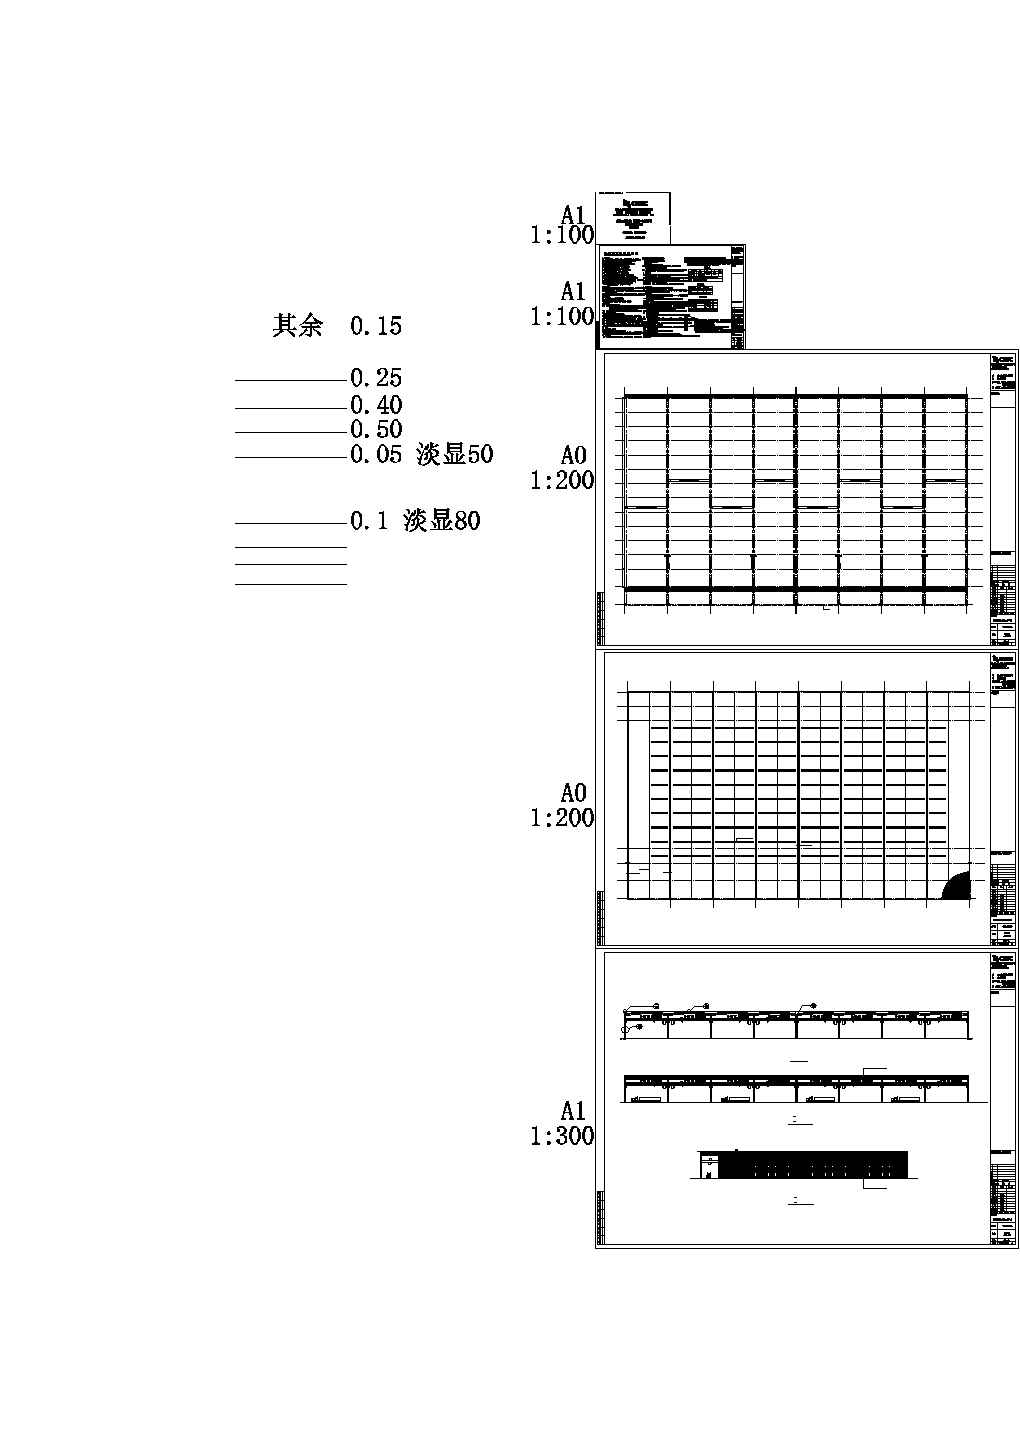 某现代标准型某公司钢铁物流B区仓储设计详细施工CAD图纸